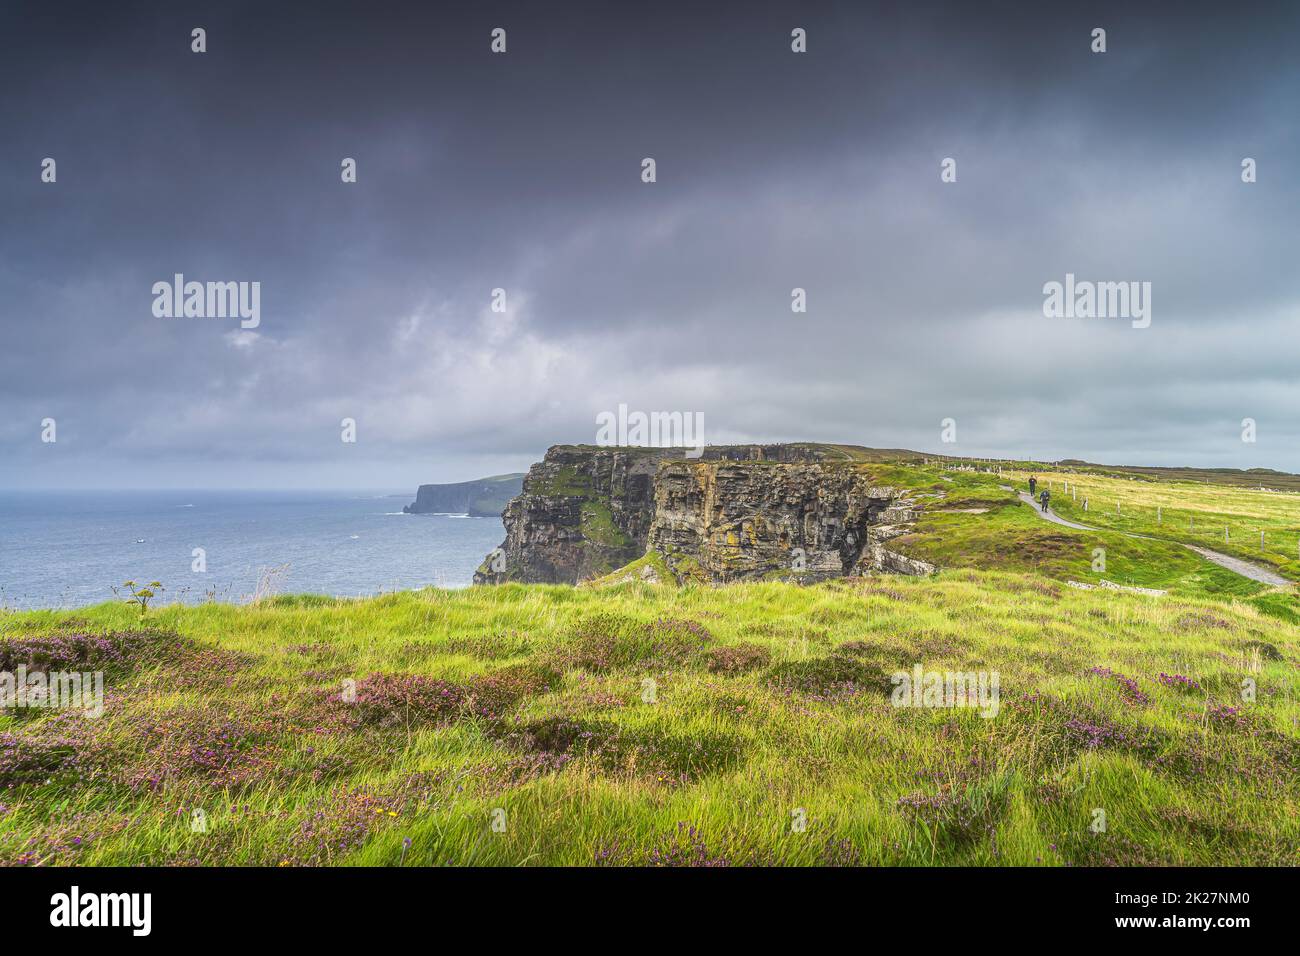 La bruyère pourpre grandit sur le sommet des falaises emblématiques de Moher, en Irlande Banque D'Images